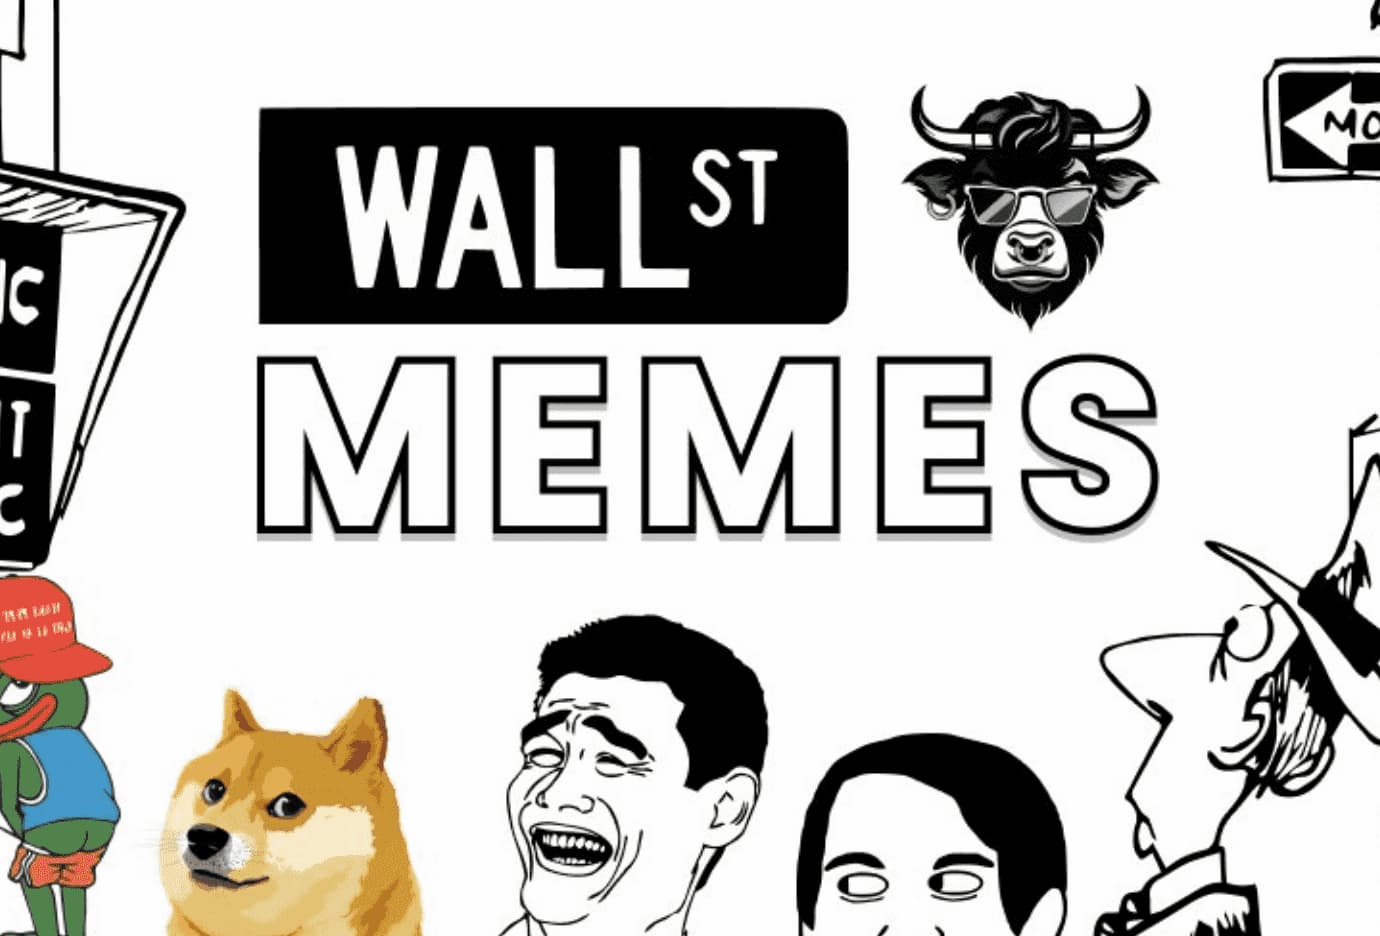 Wall Street Memes-Entwickler kündigen neuen Burn-Mechanismus an, um $WSM Tokenomics neu zu beleben